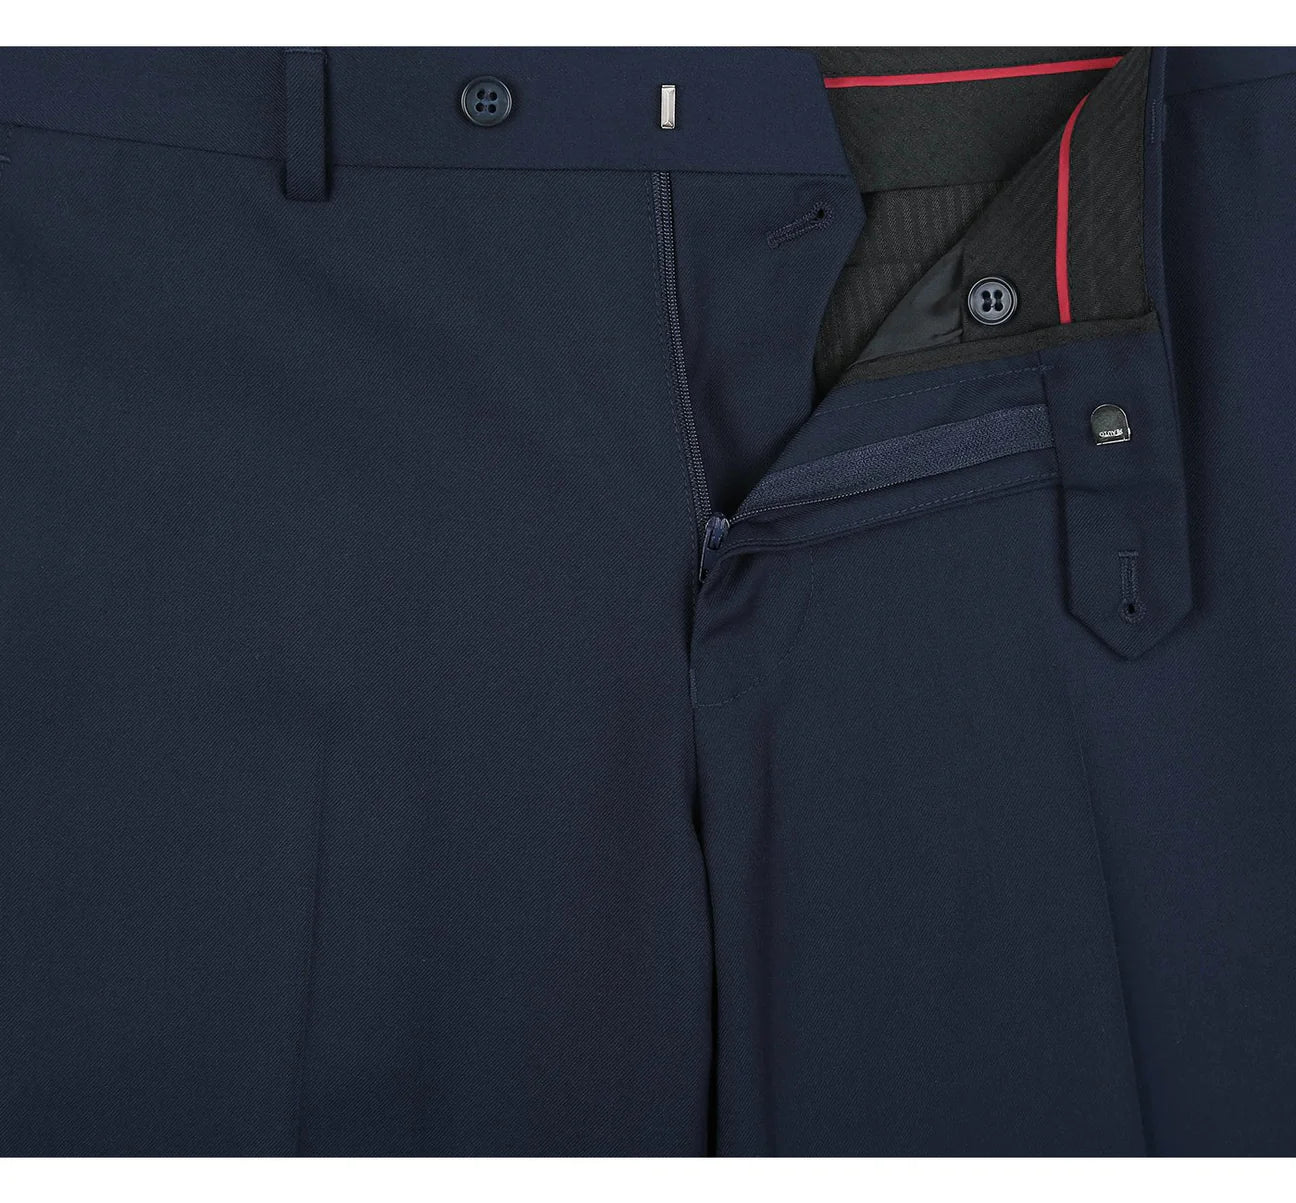 Renoir Classic Fit Navy 2 Button Notch Lapel Suit 201-19